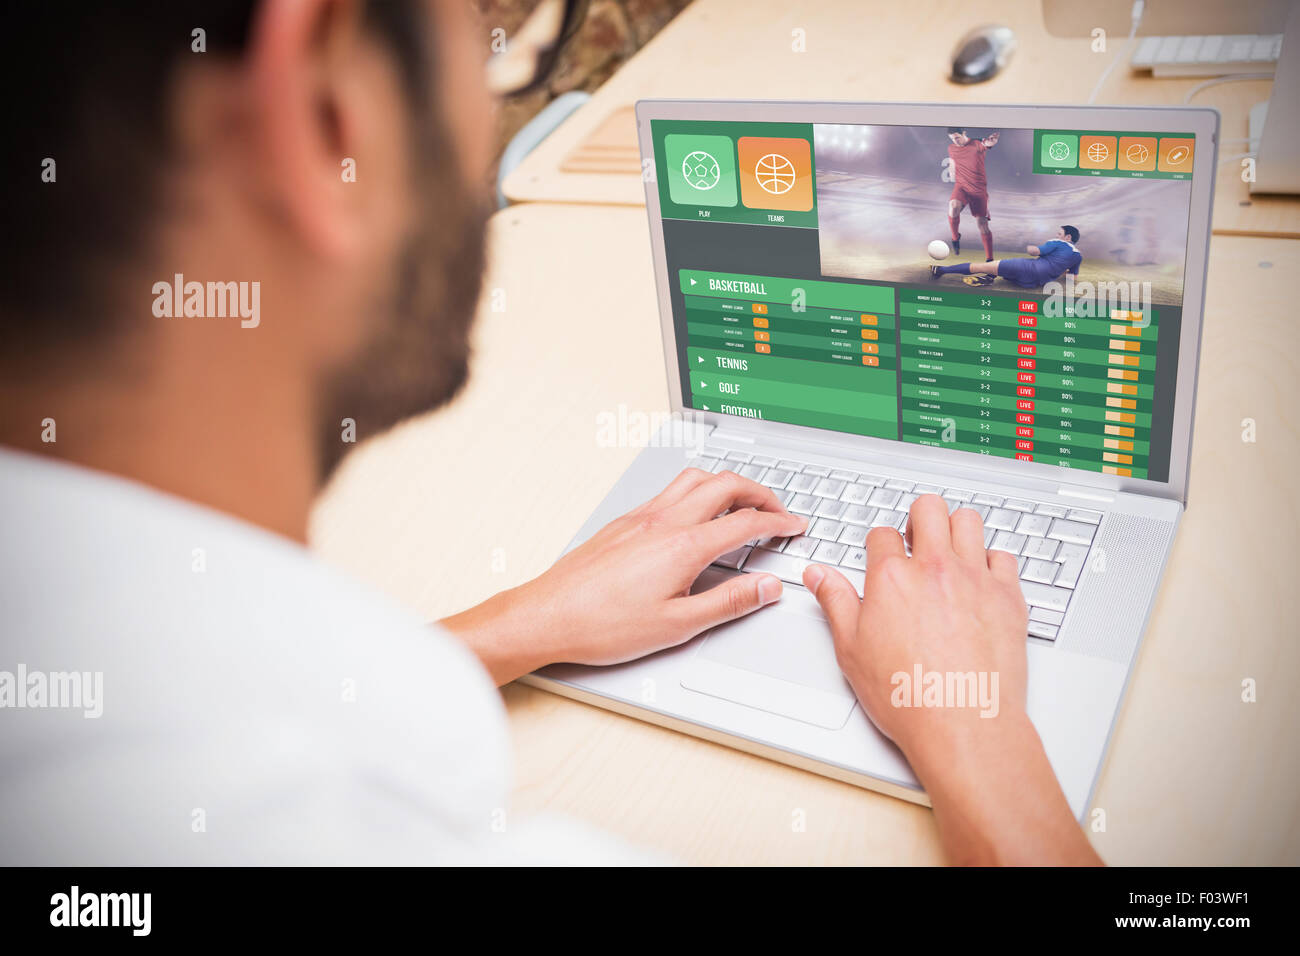 Immagine composita del gioco d'azzardo schermo app Foto Stock